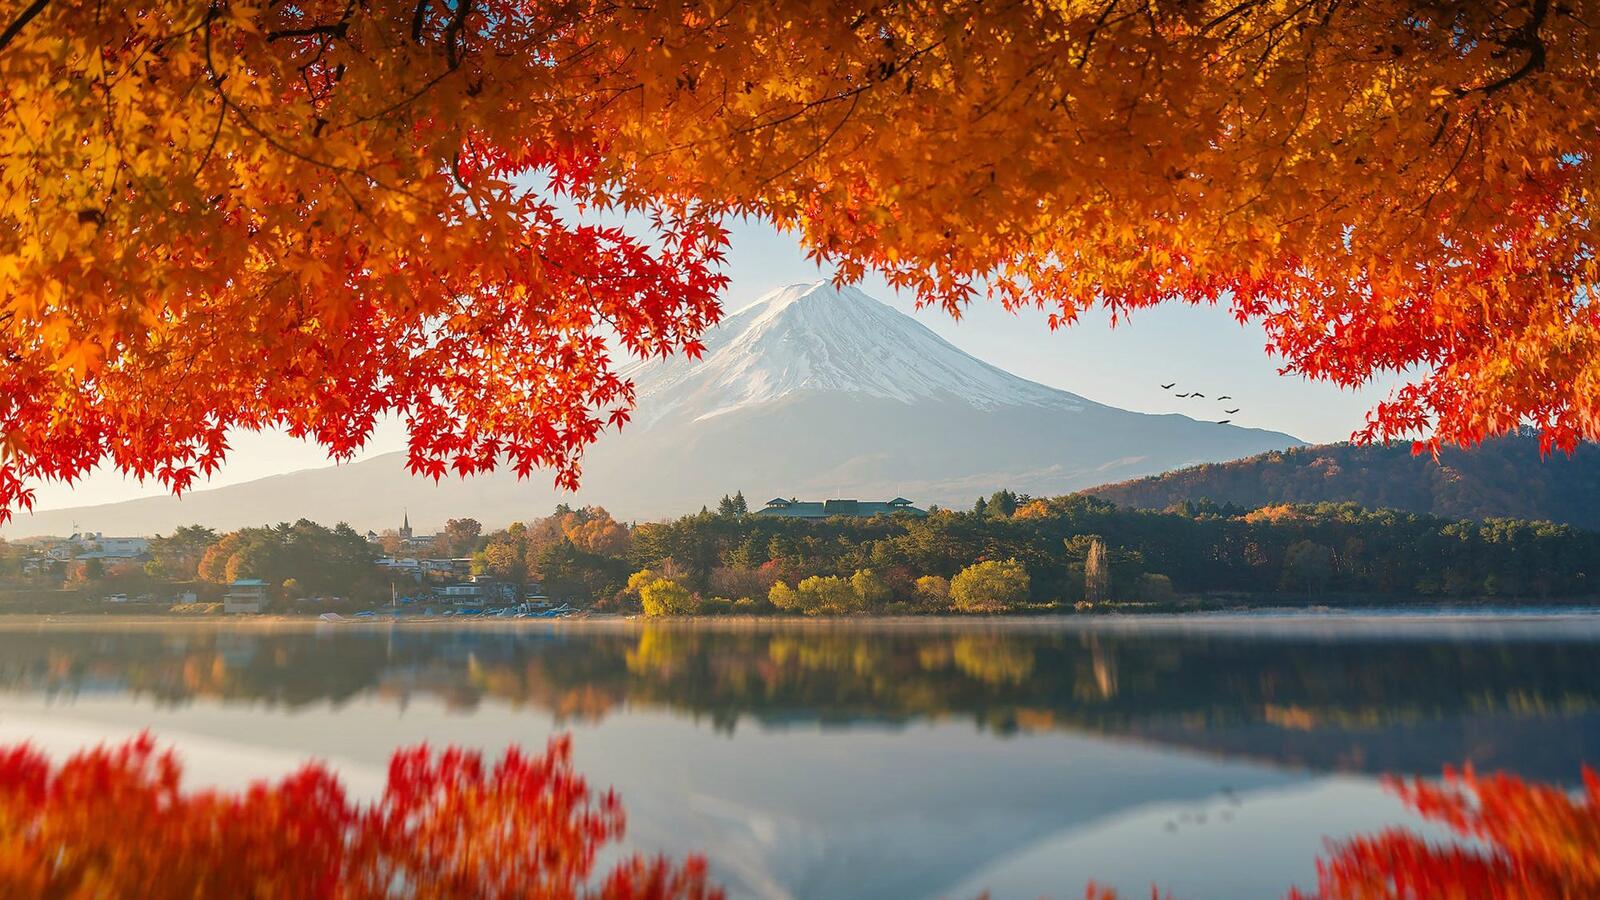 Обои Япония гора Фудзи фотографии на рабочий стол